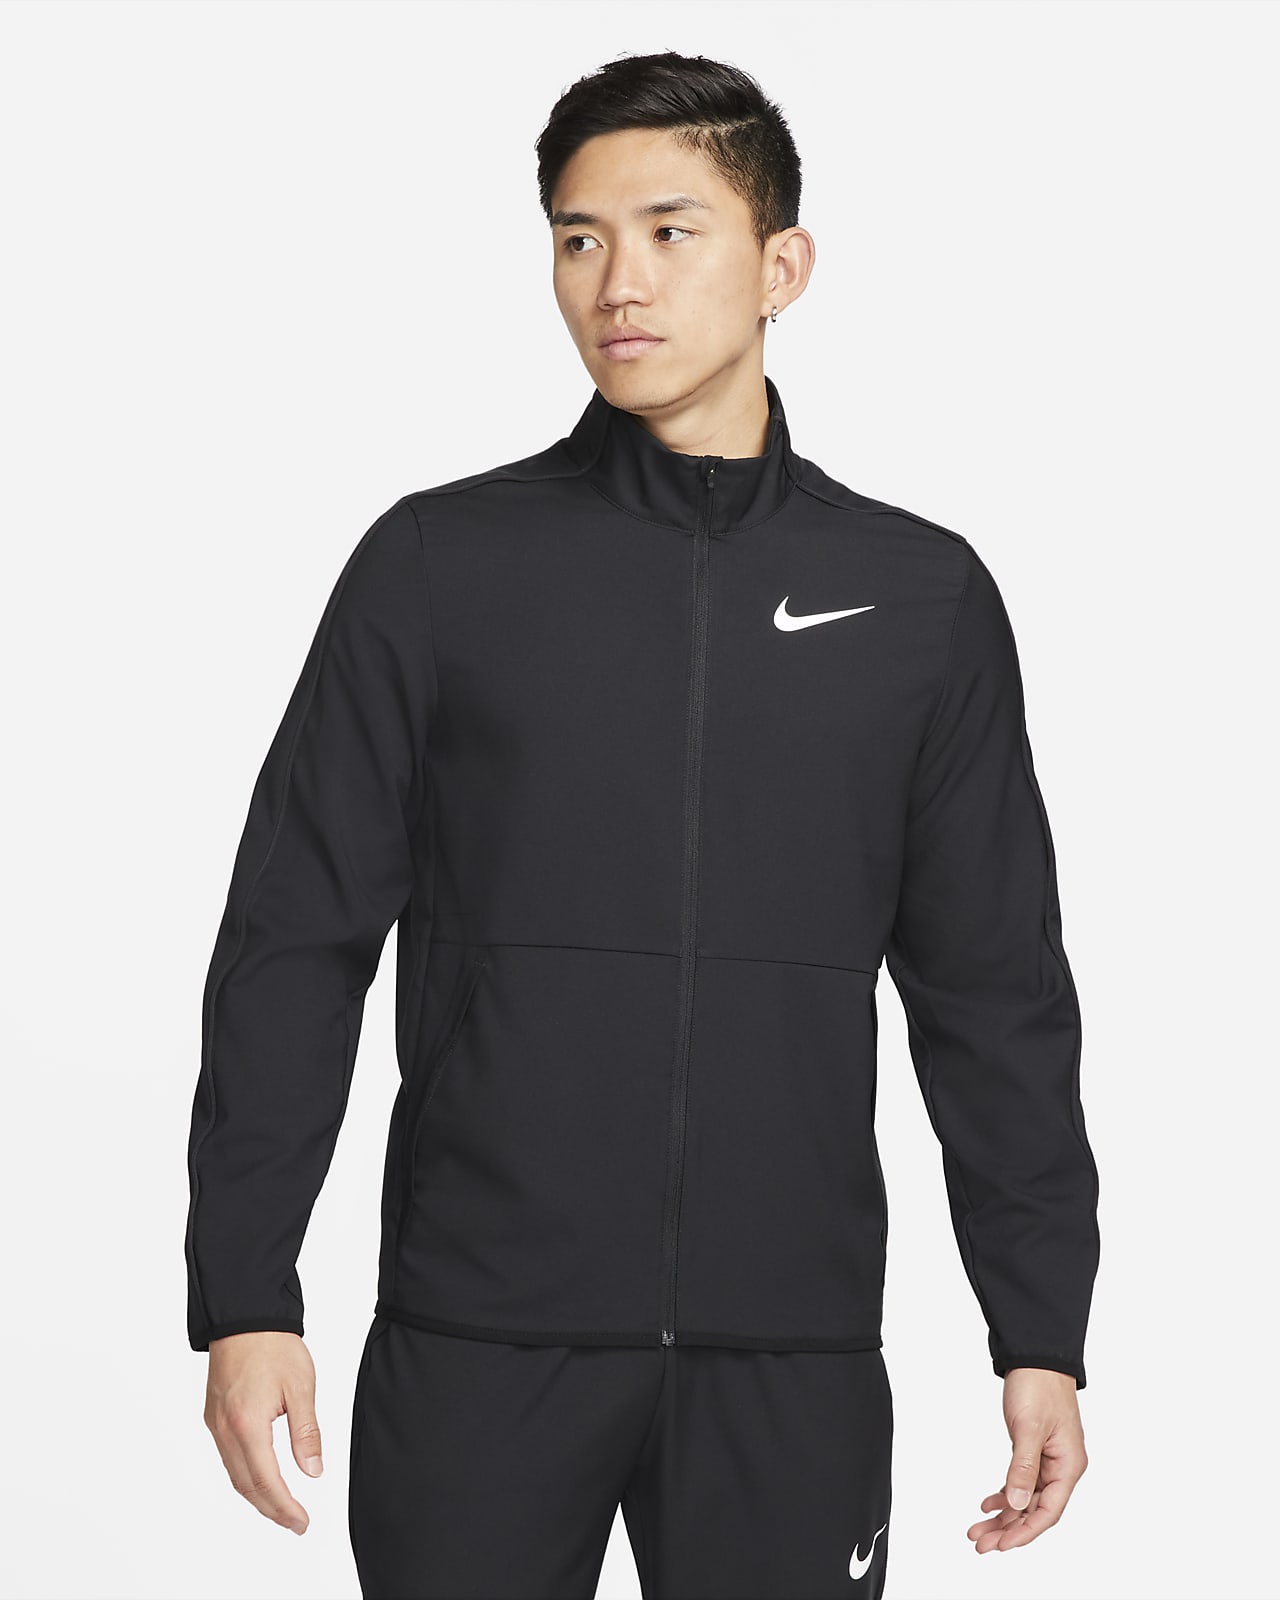 เสื้อแจ็คเก็ตเทรนนิ่งผู้ชายแบบทอ Nike Dri-FIT